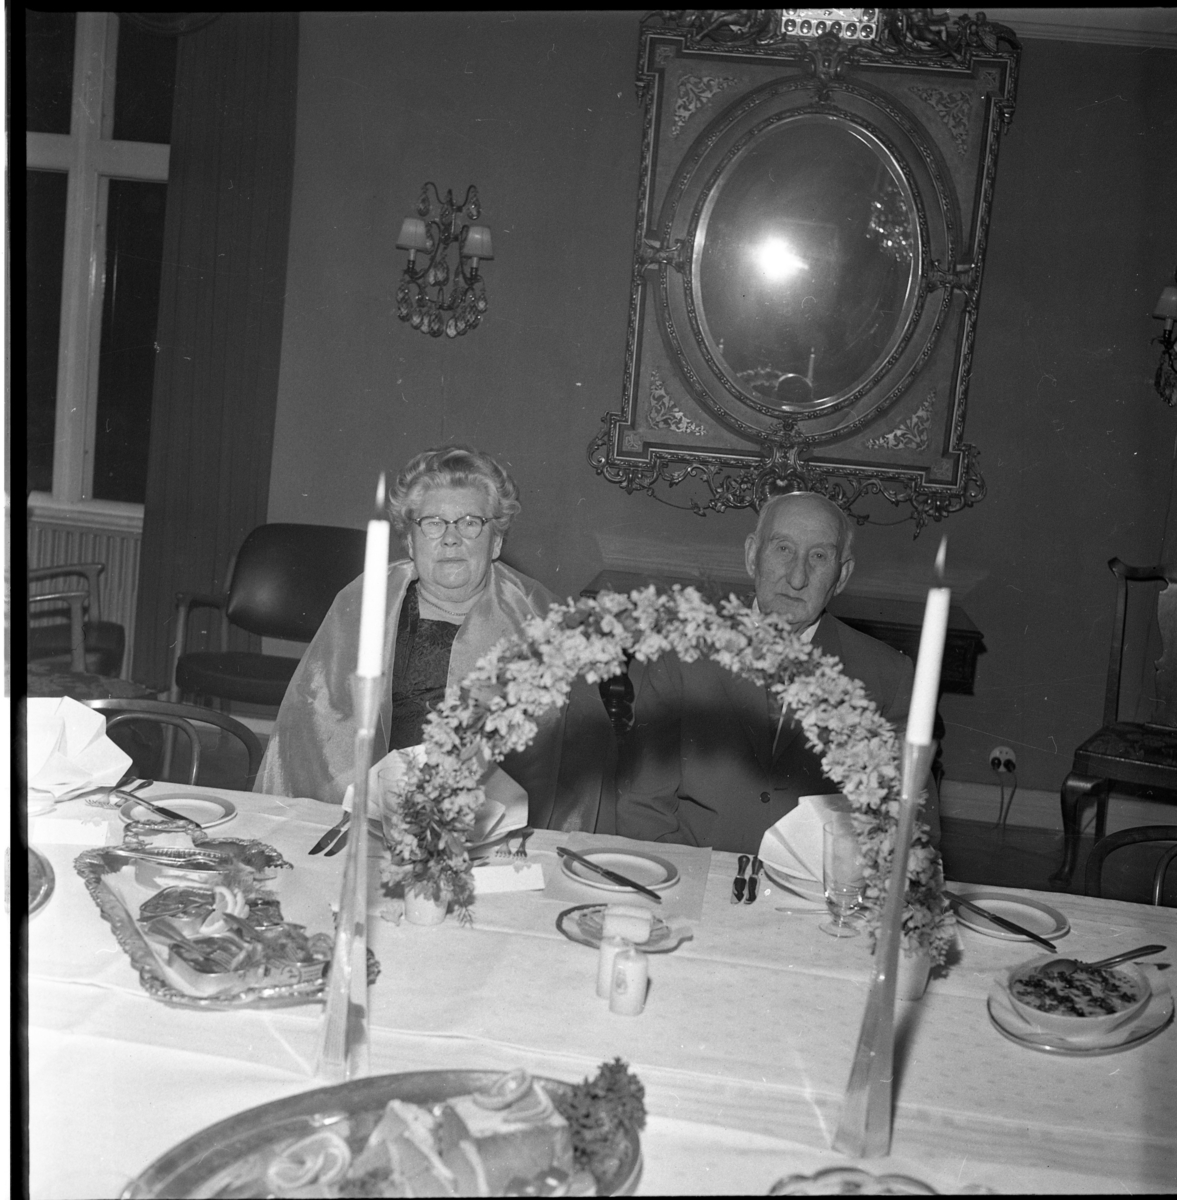 Middag på Ribbagården (?) i Gränna. Man firar Herman och Edit Thörns guldbröllop, samtidigt Anna-Greta Fransson 40 år och Vivan Strand 50 år. Bakom blomsterbågen sitter Edit och Herman Thörn.